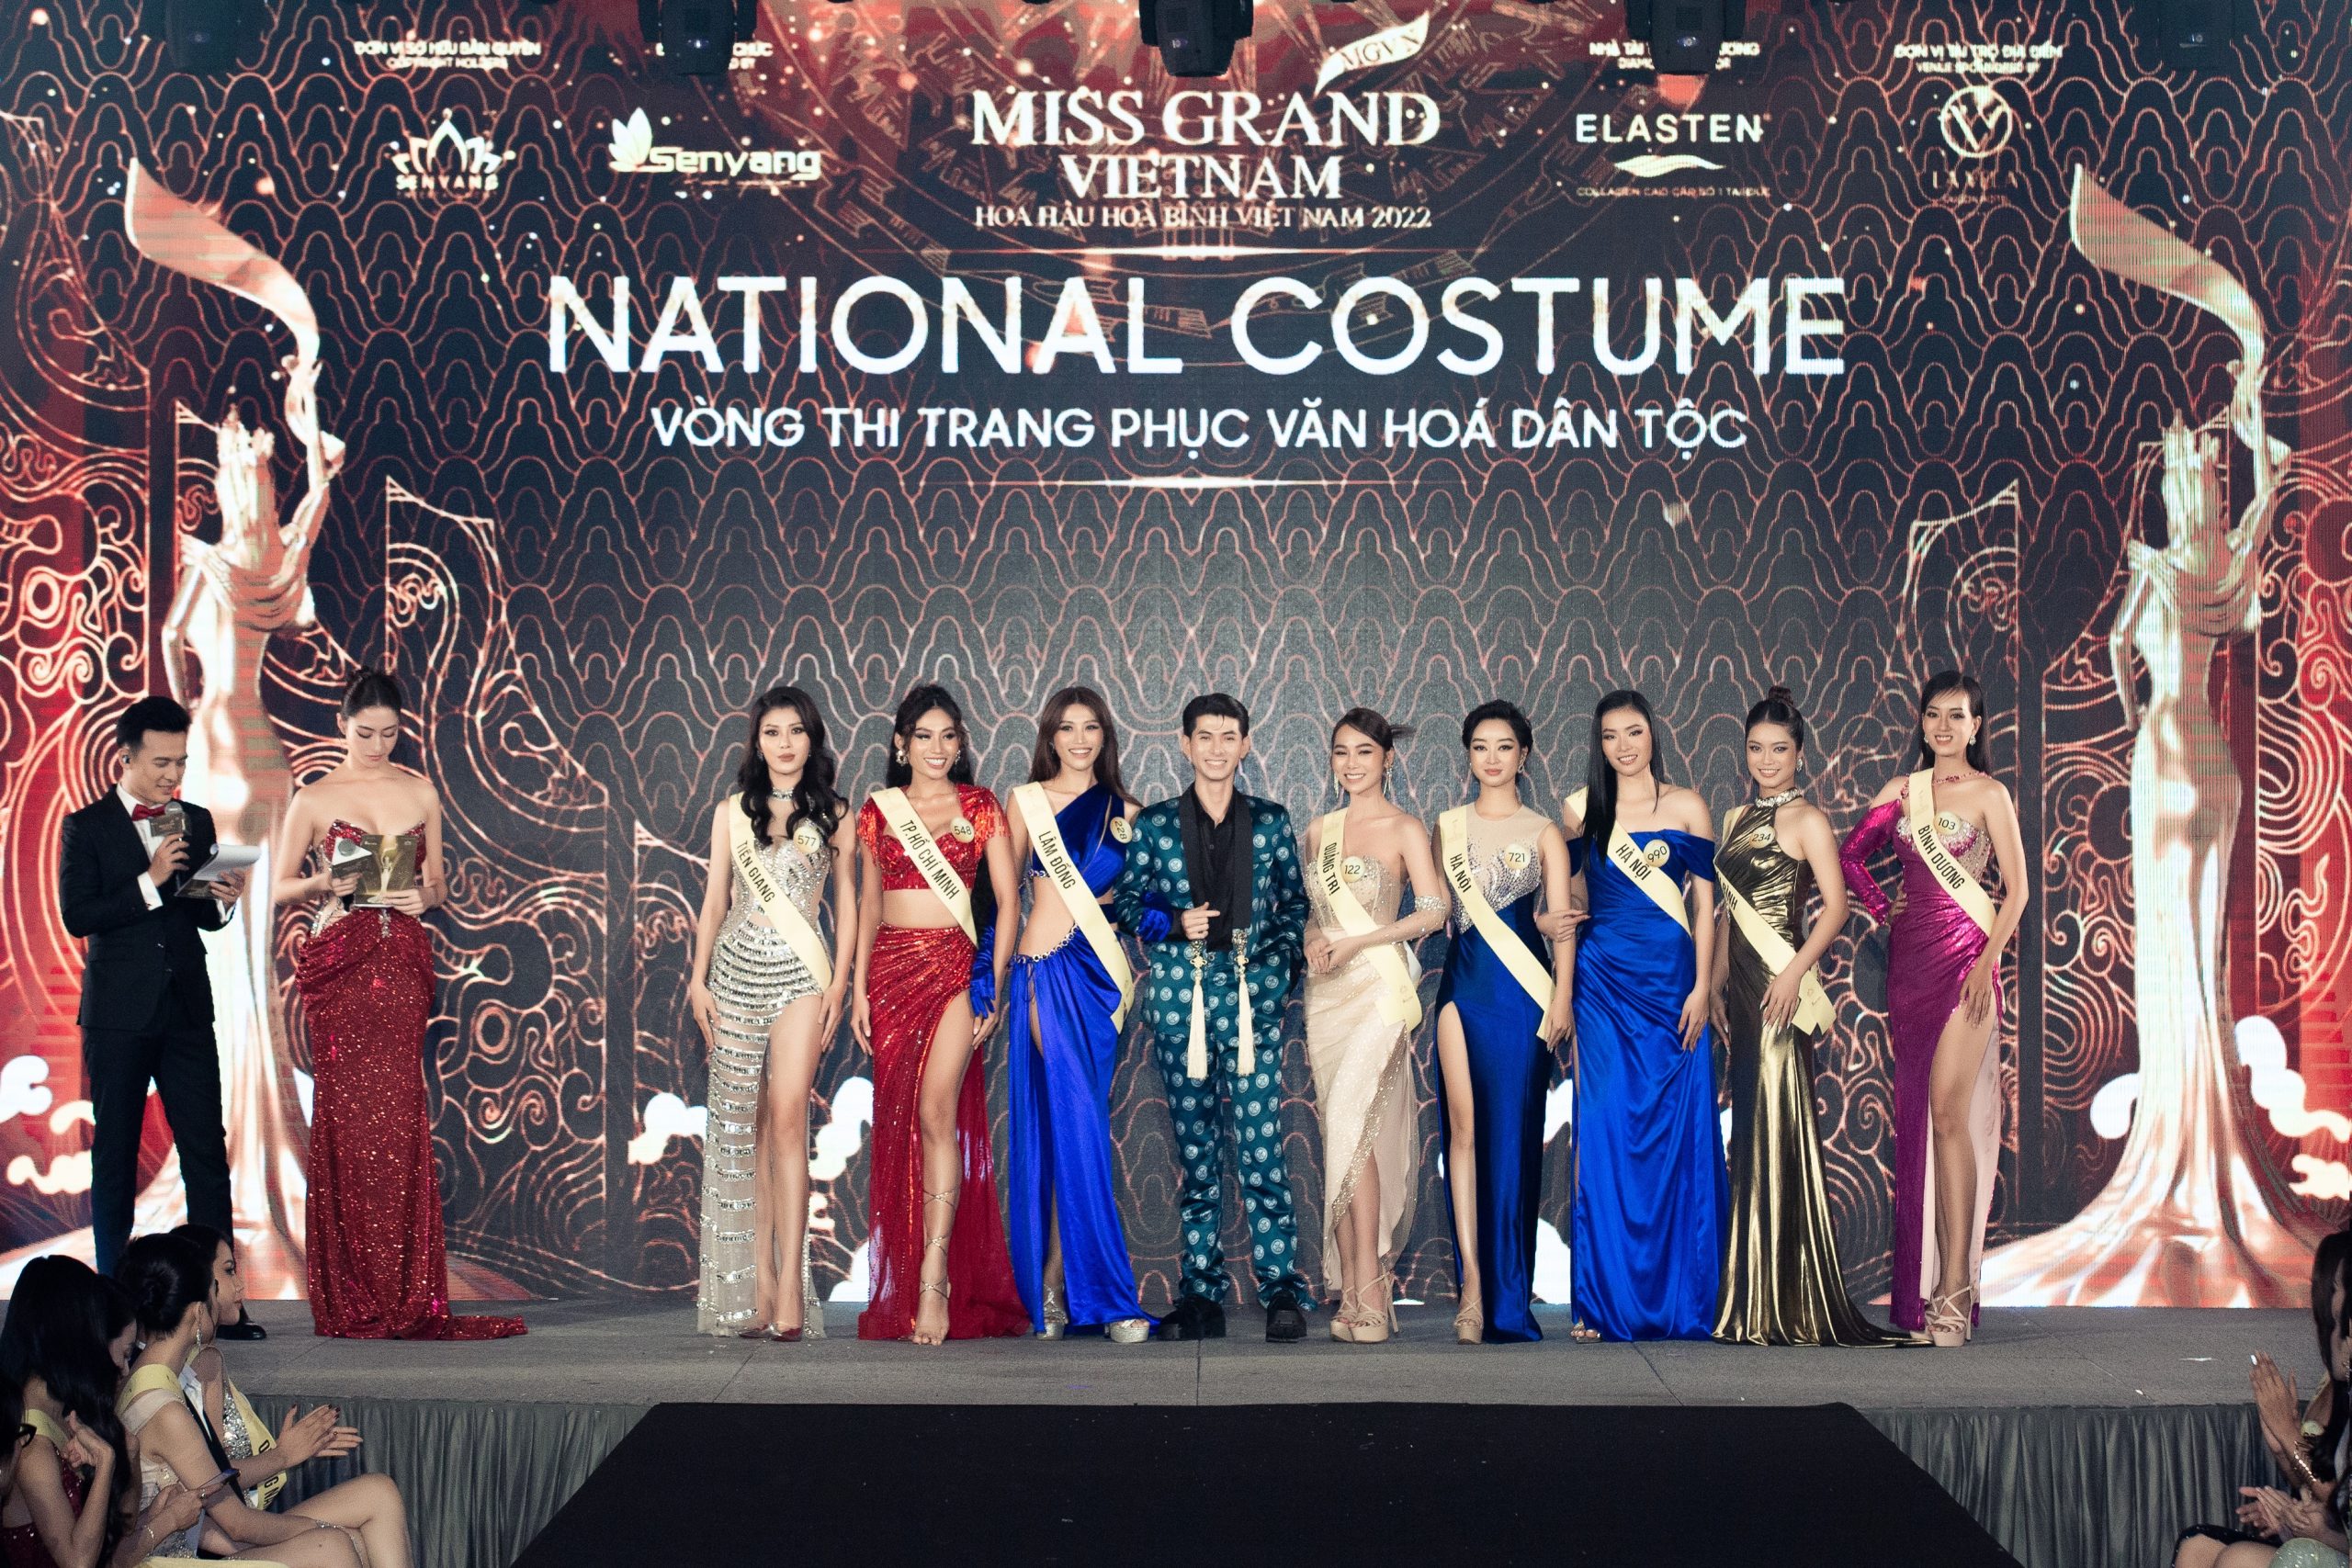 Harper's Bazaar_ Miss Grand Vietnam 2022 công bố top thí sinh vào chung kết_05